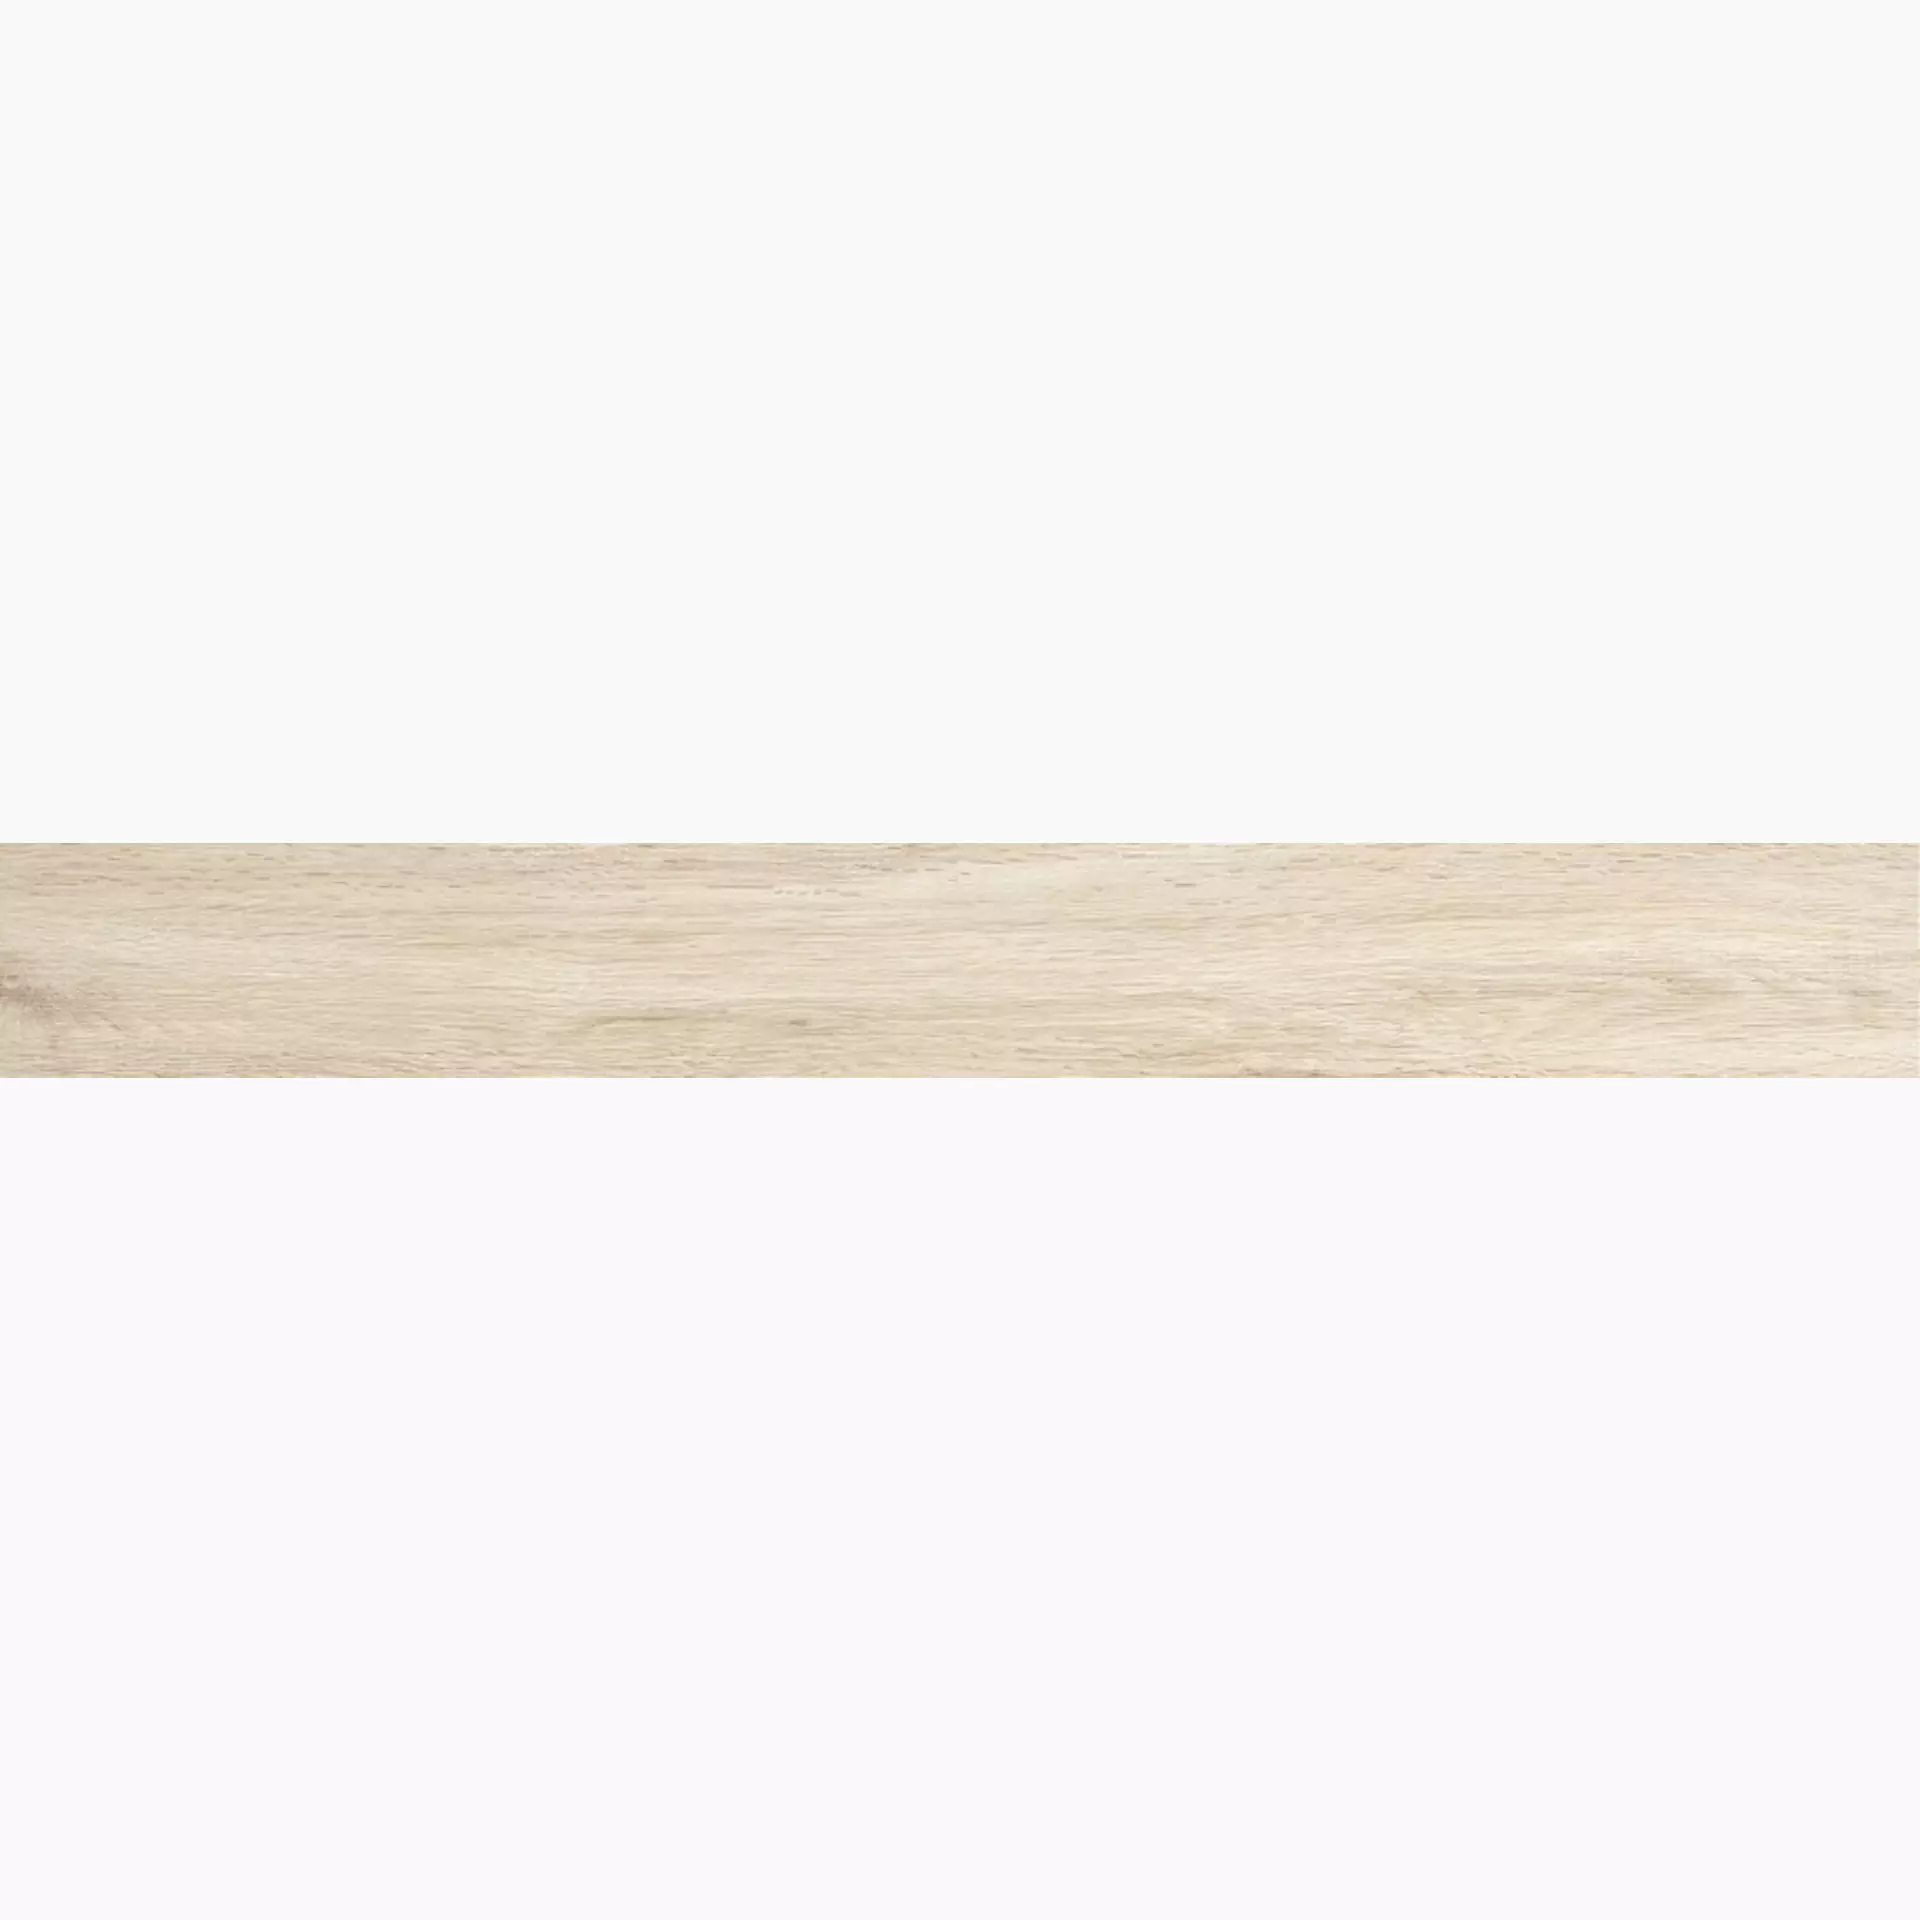 Iris E-Wood White Naturale 898014 11x90cm 9mm